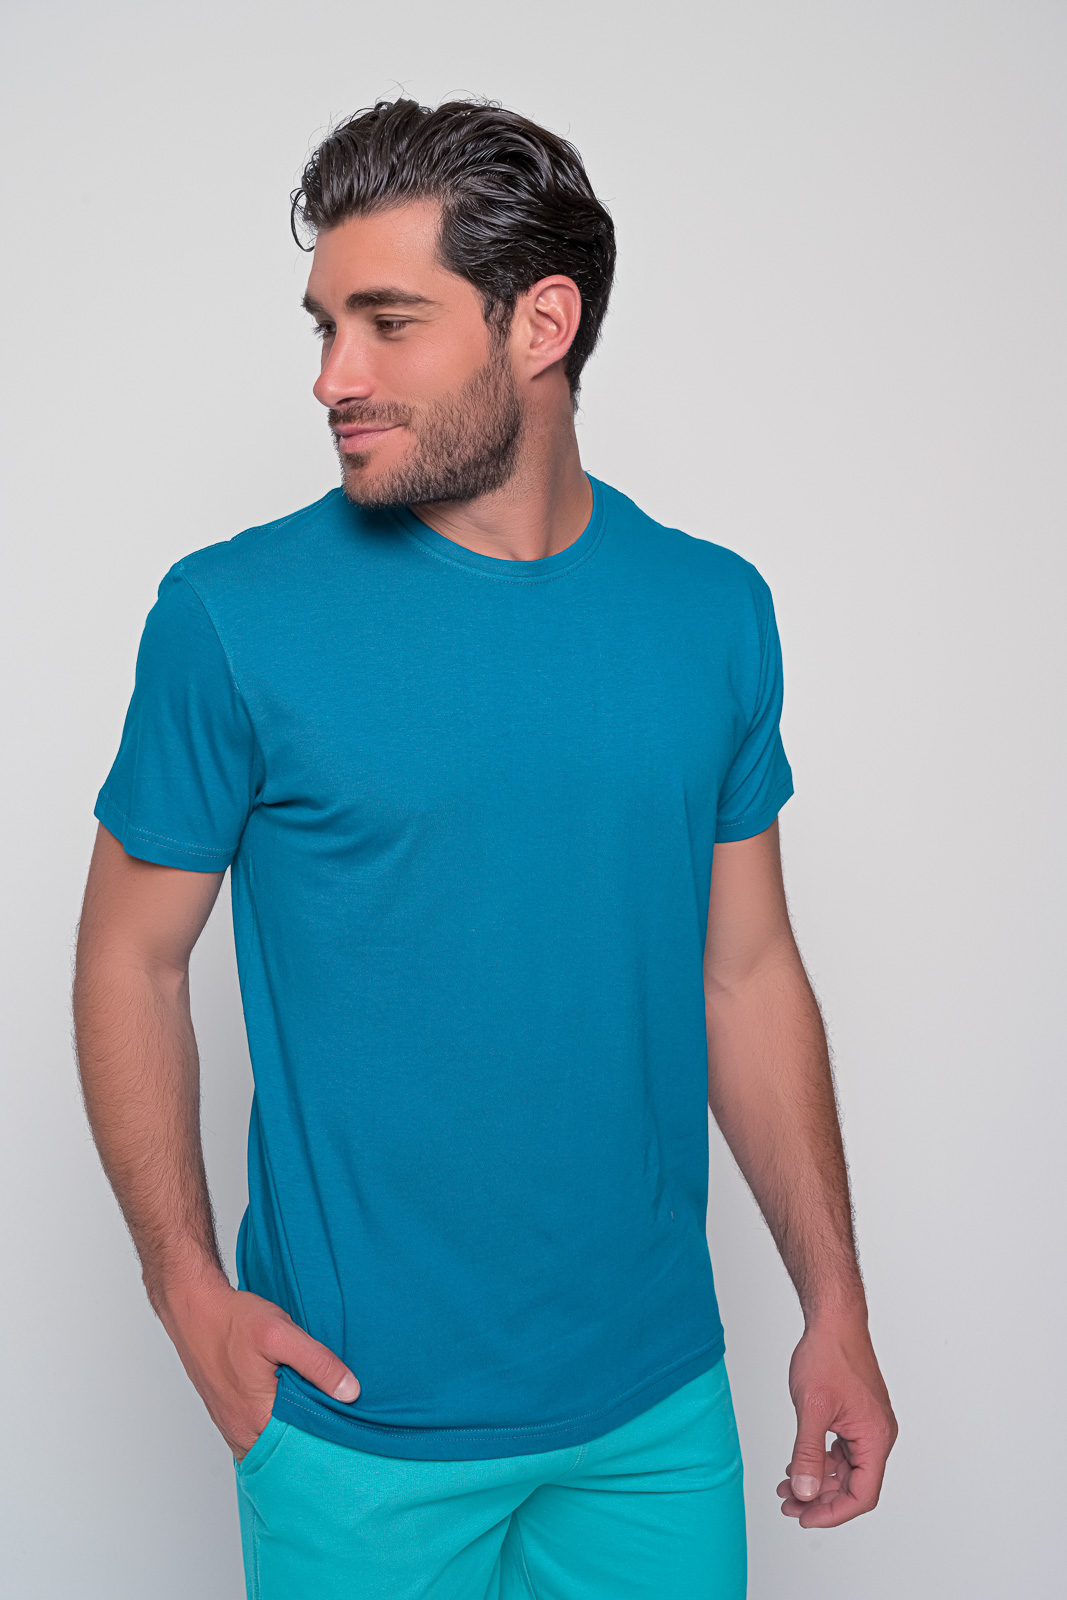 Μπλουζακι ανδρικο μονόχρωμο, λαιμόκοψη, κοντομάνικο σε διάφορα μεγέθη και χρώματα. T-Shirt Ανδρικό | Metropolisfashioncity.gr